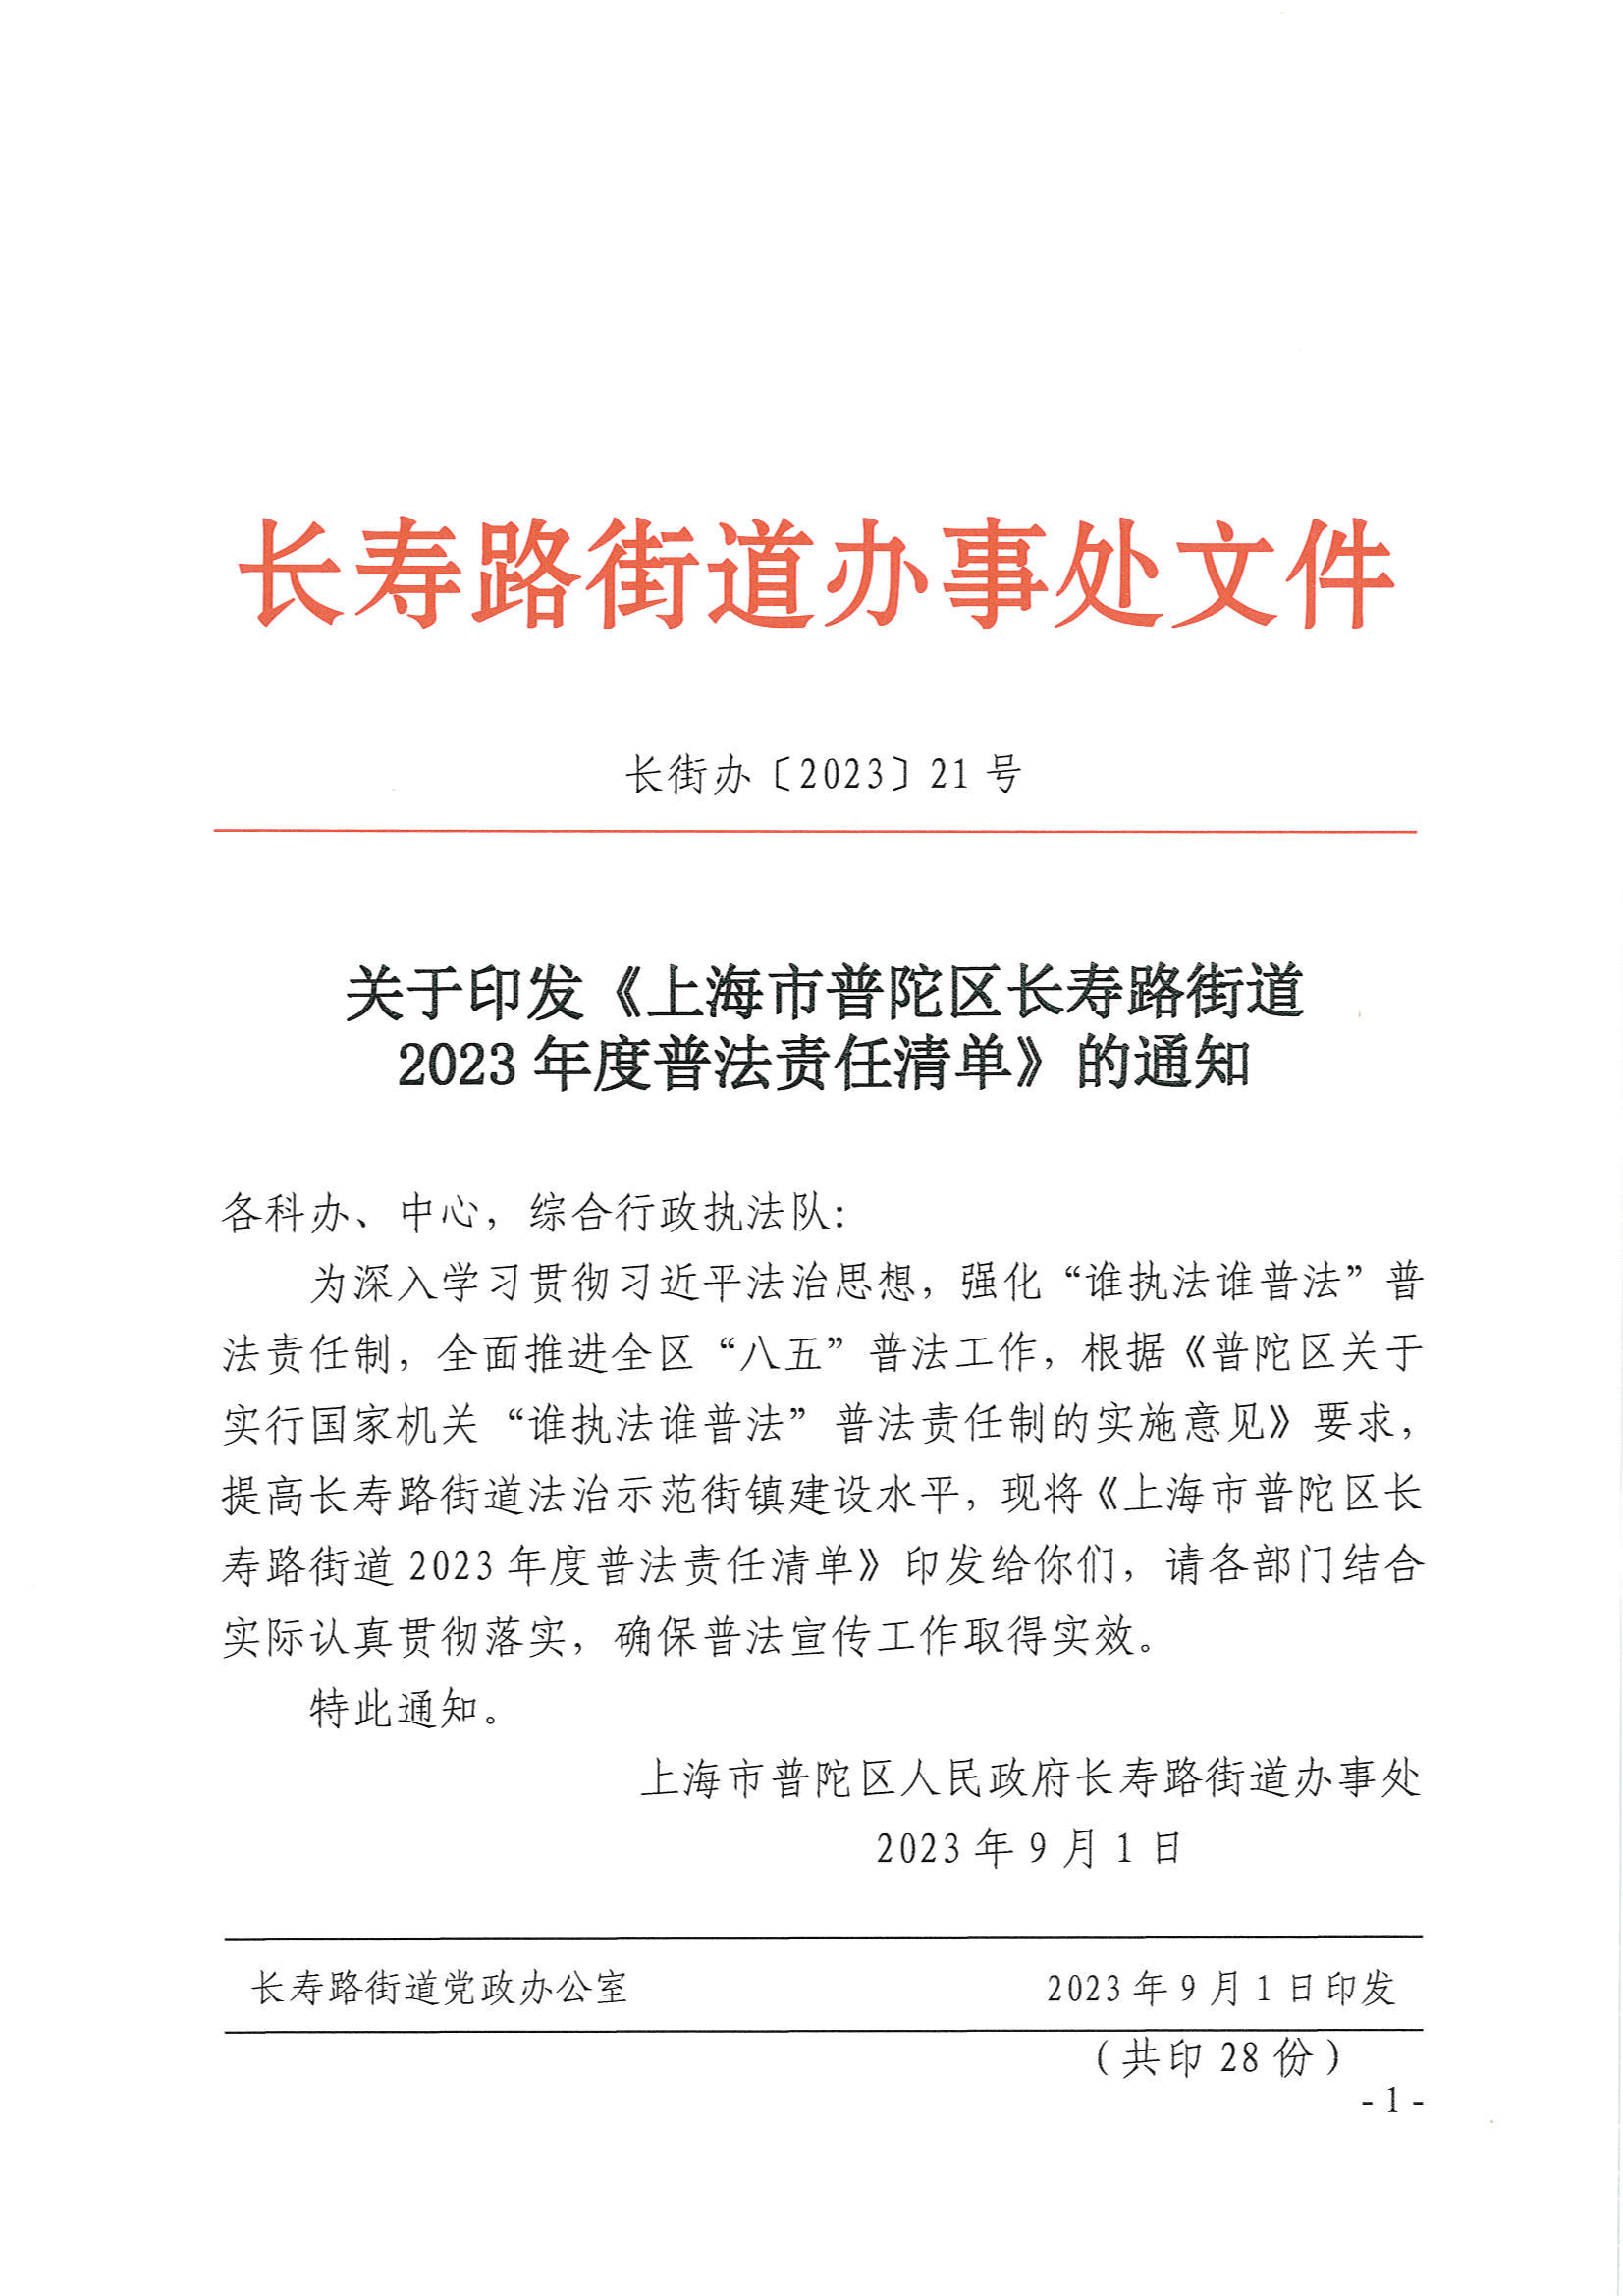 关于印发《上海市普陀区长寿路街道2023年度普法责任清单》的通知